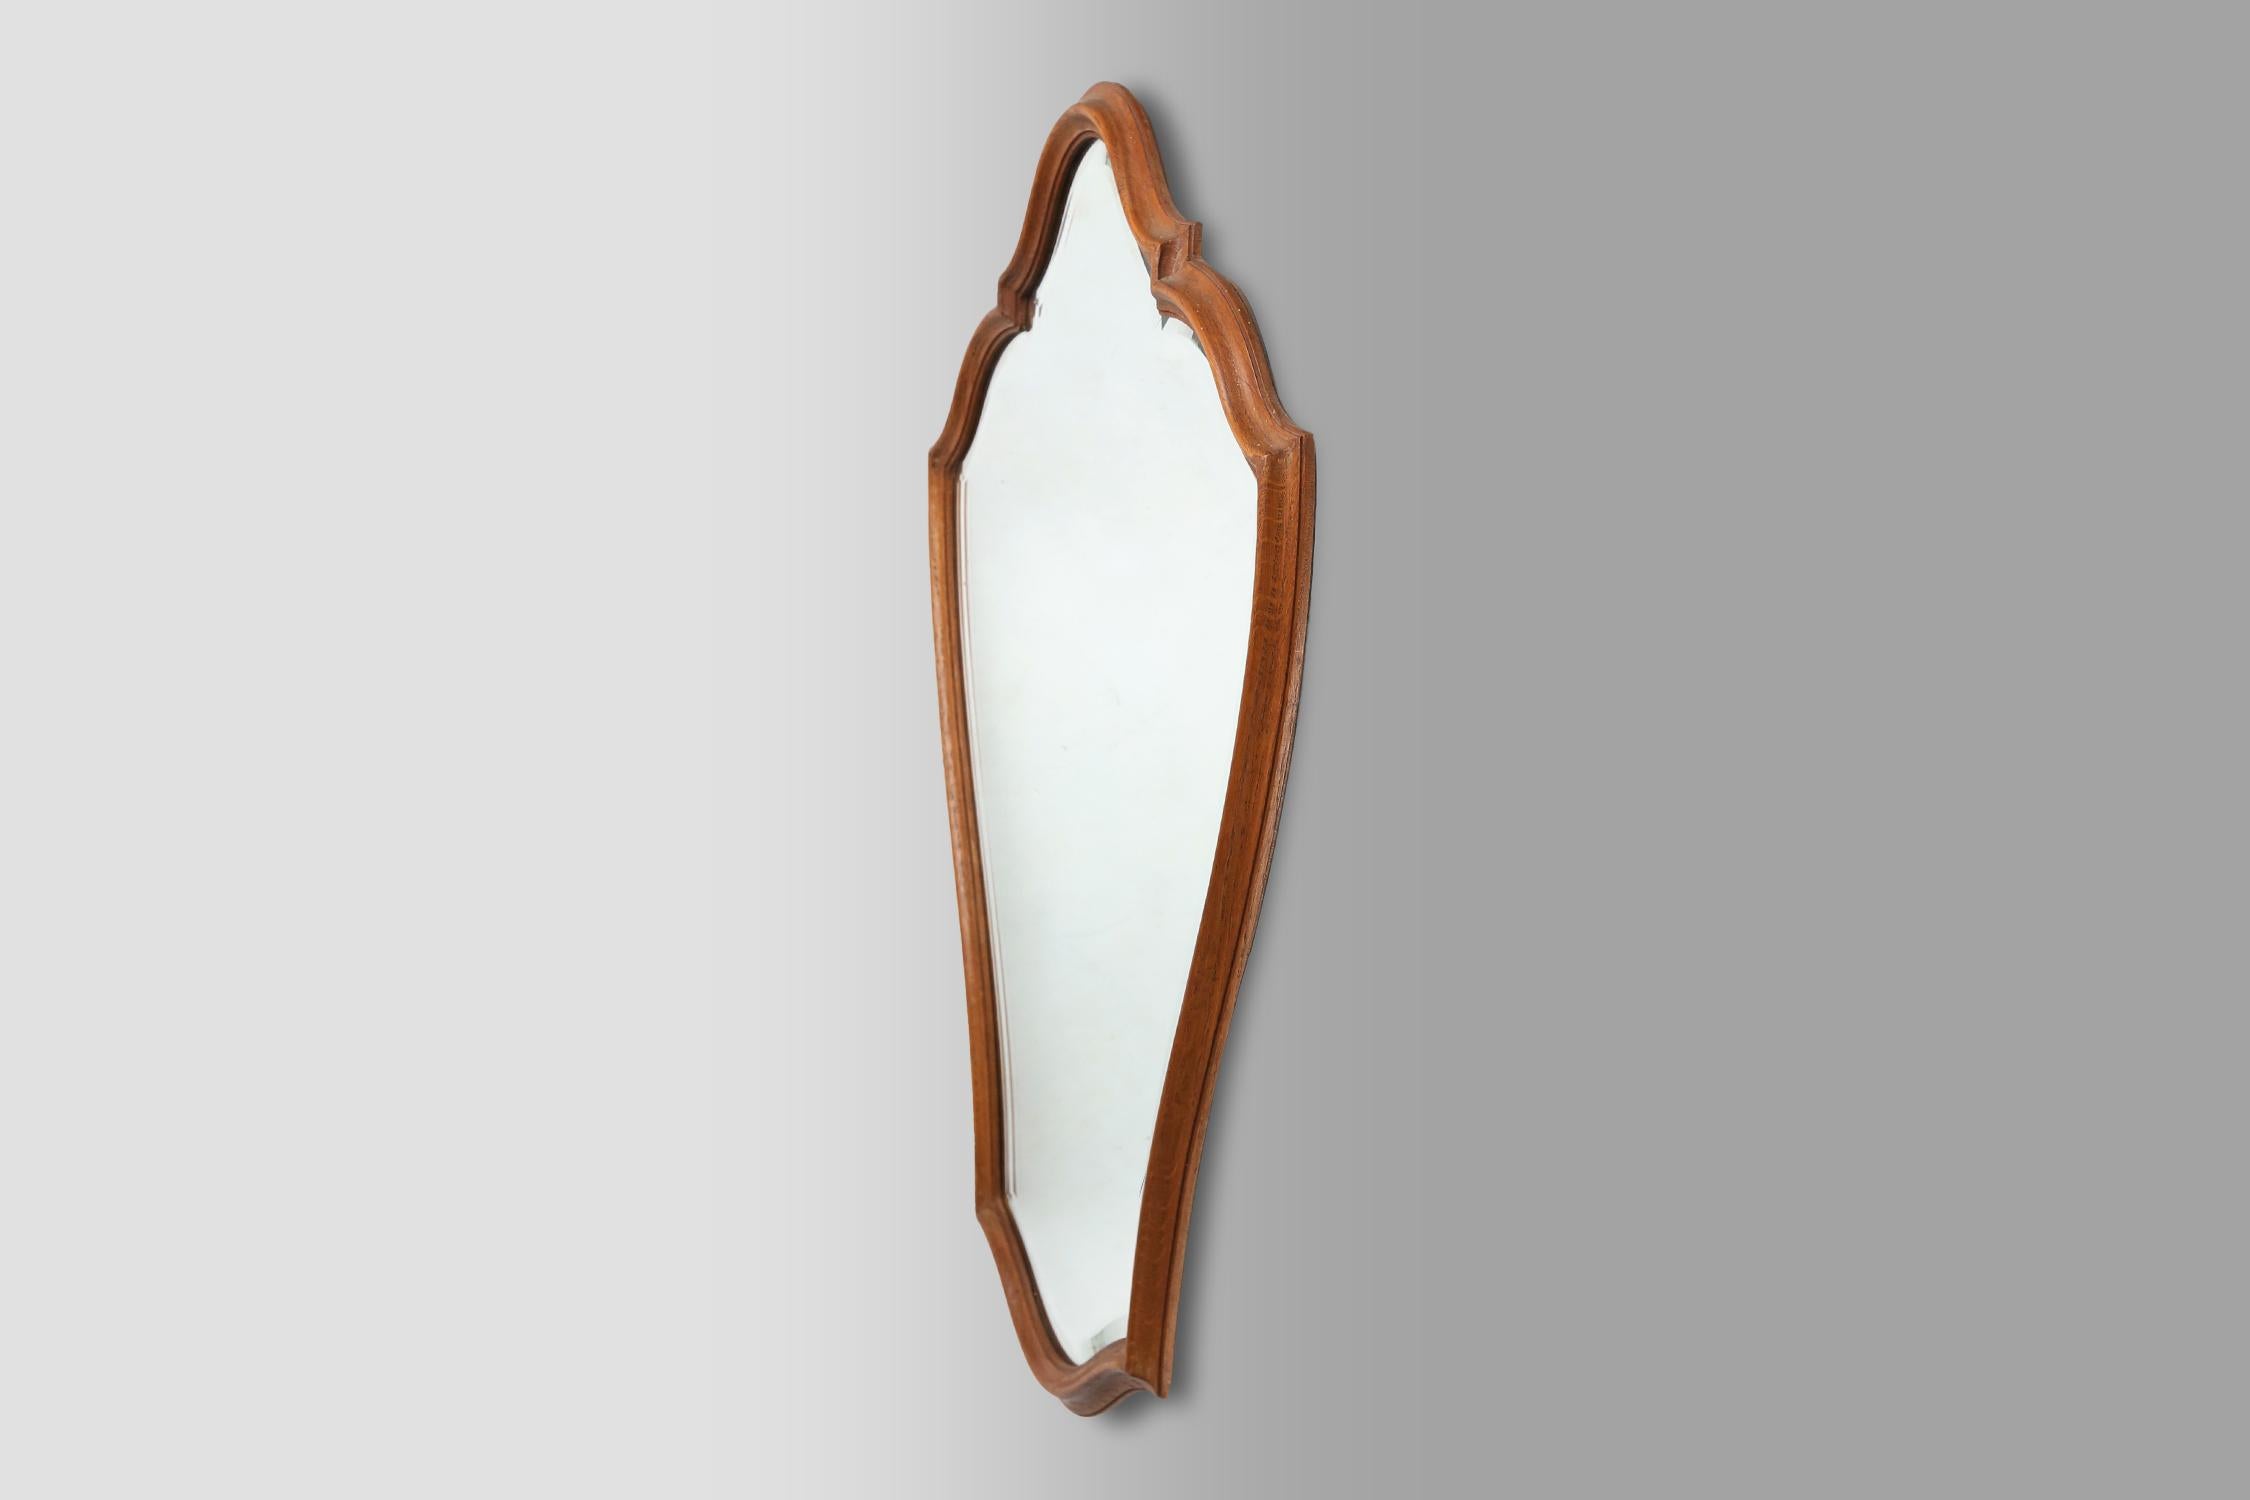 Frankreich / 1950er Jahre / geschnitzter Holzspiegel / Mitte des Jahrhunderts / Vintage-Design

Organisch gefütterter Holzspiegel mit aufwendigen Details aus den 1950er Jahren, entworfen und hergestellt in Frankreich. Dieser Spiegel mit luxuriösem,